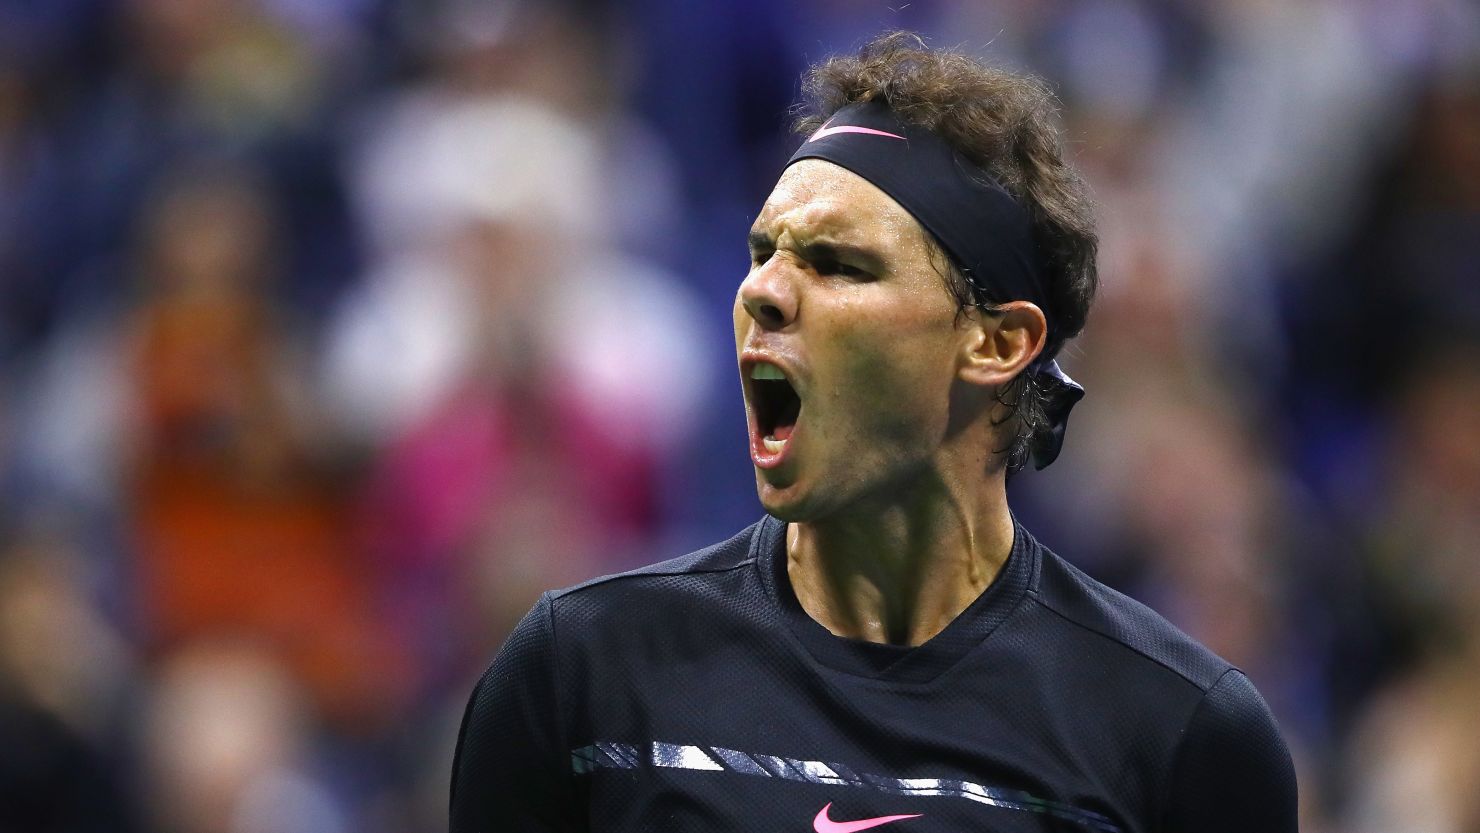 Rafael Nadal reaches his 23rd major final in his career.